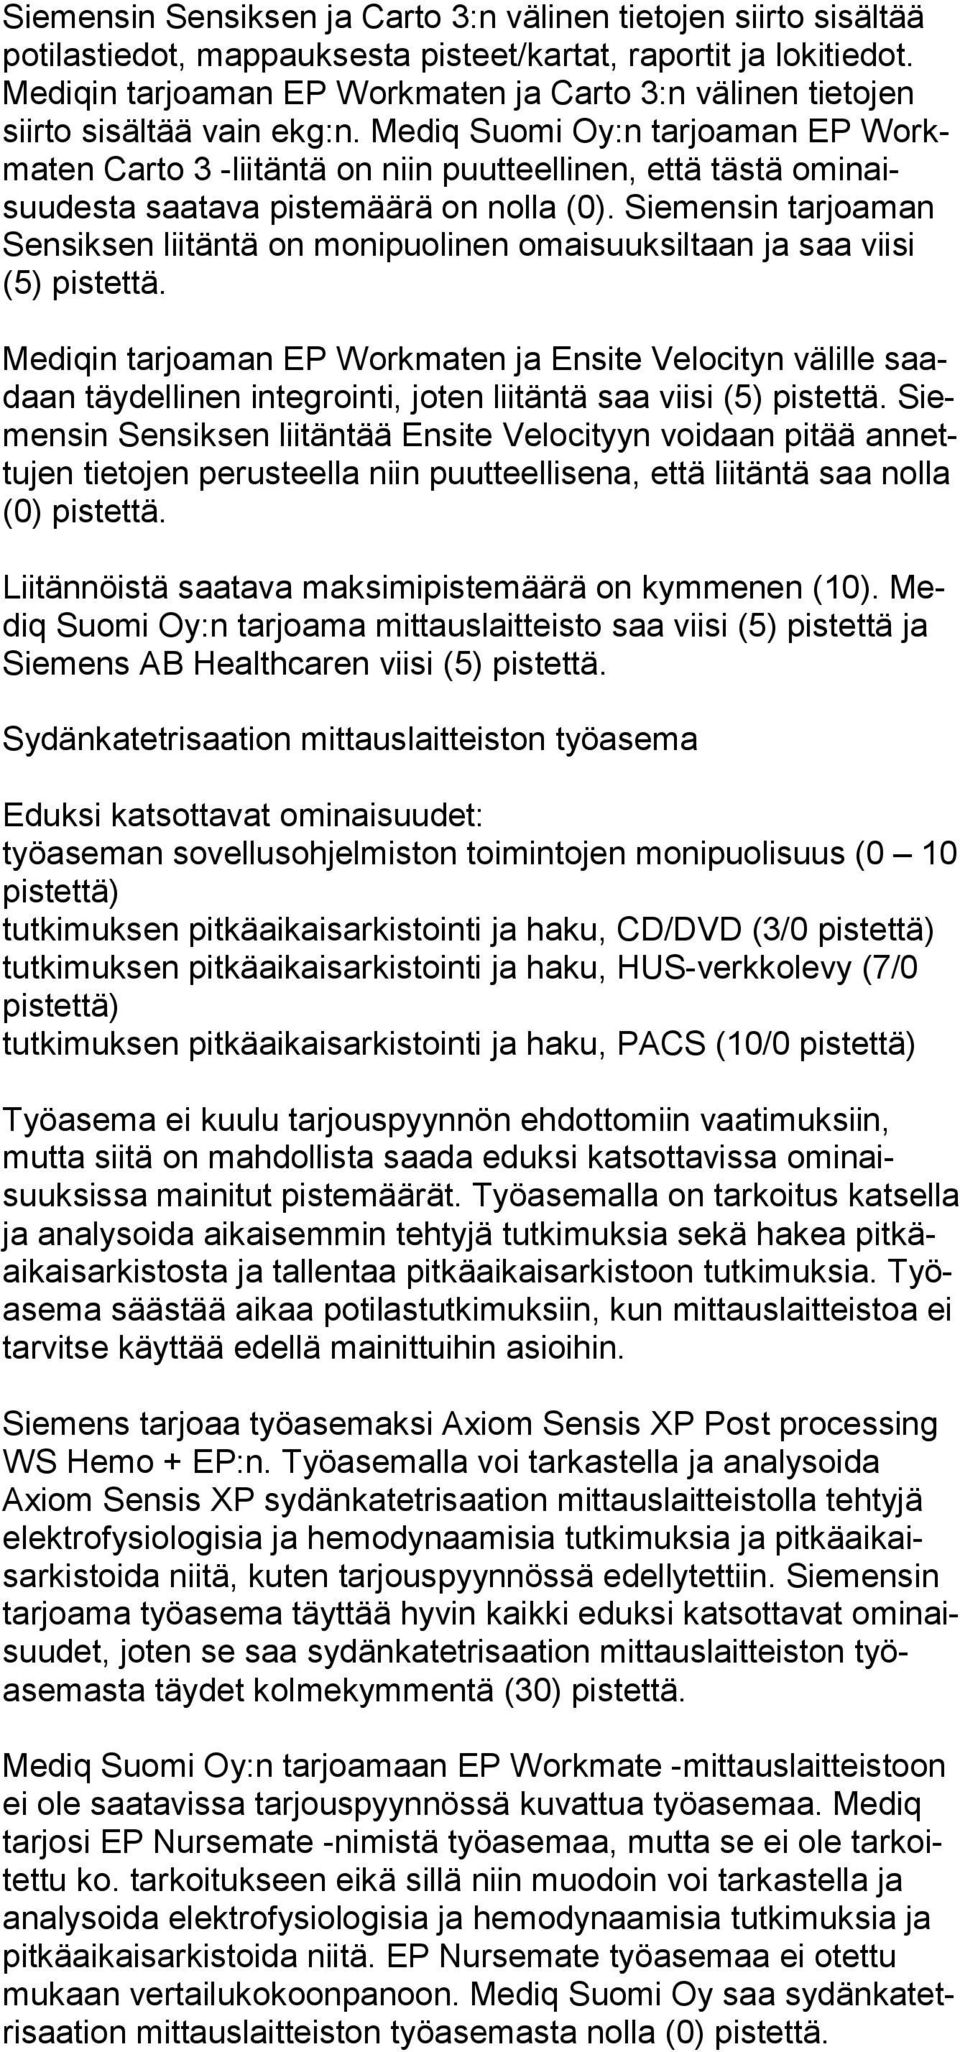 Mediq Suomi Oy:n tarjoaman EP Workmaten Carto 3 -lii täntä on niin puutteellinen, että tästä omi naisuudesta saatava pistemäärä on nolla (0).